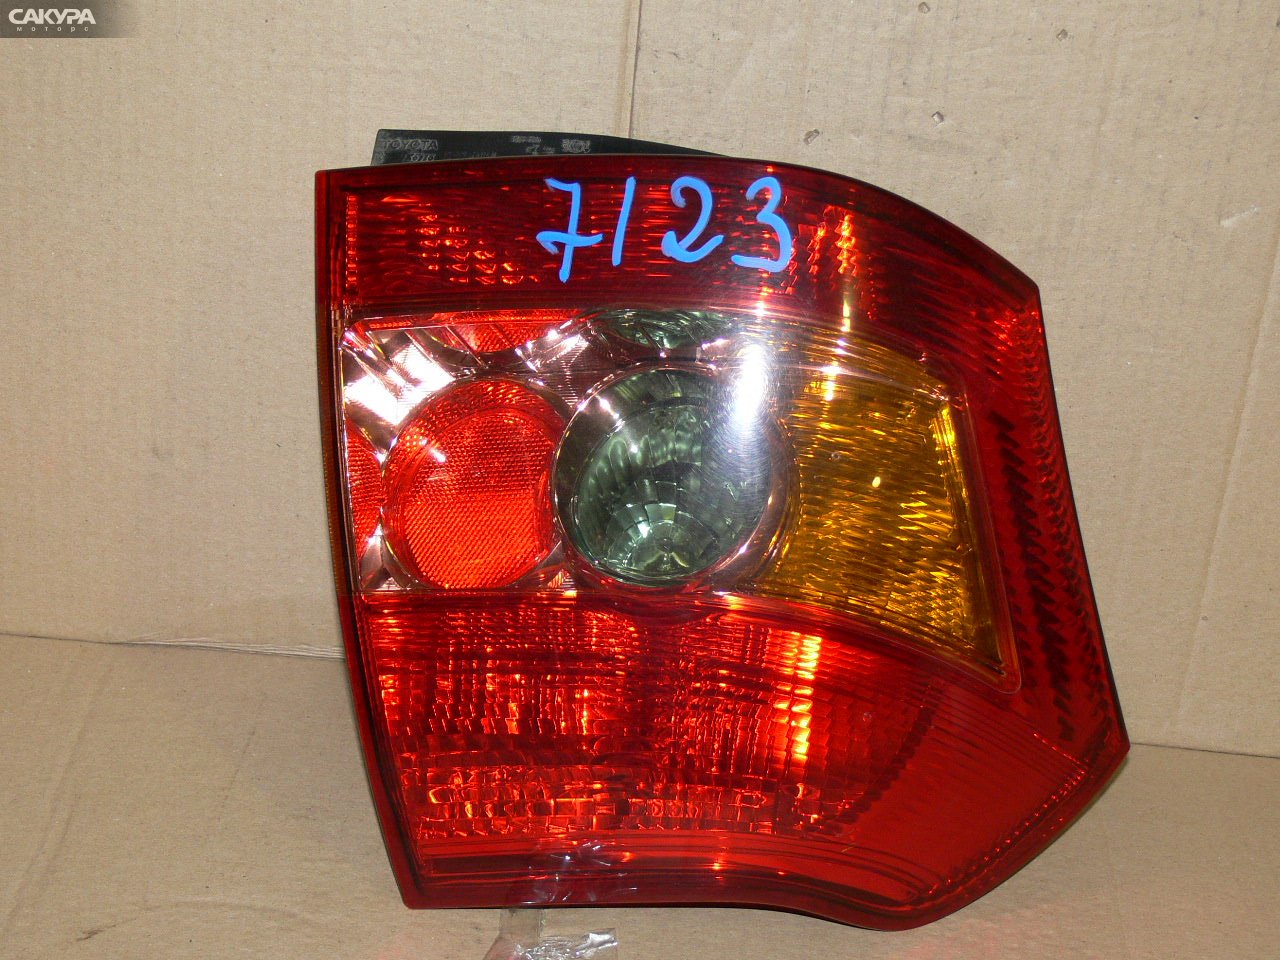 Фонарь стоп-сигнала правый Toyota Allex NZE121 13-87: купить в Сакура Иркутск.